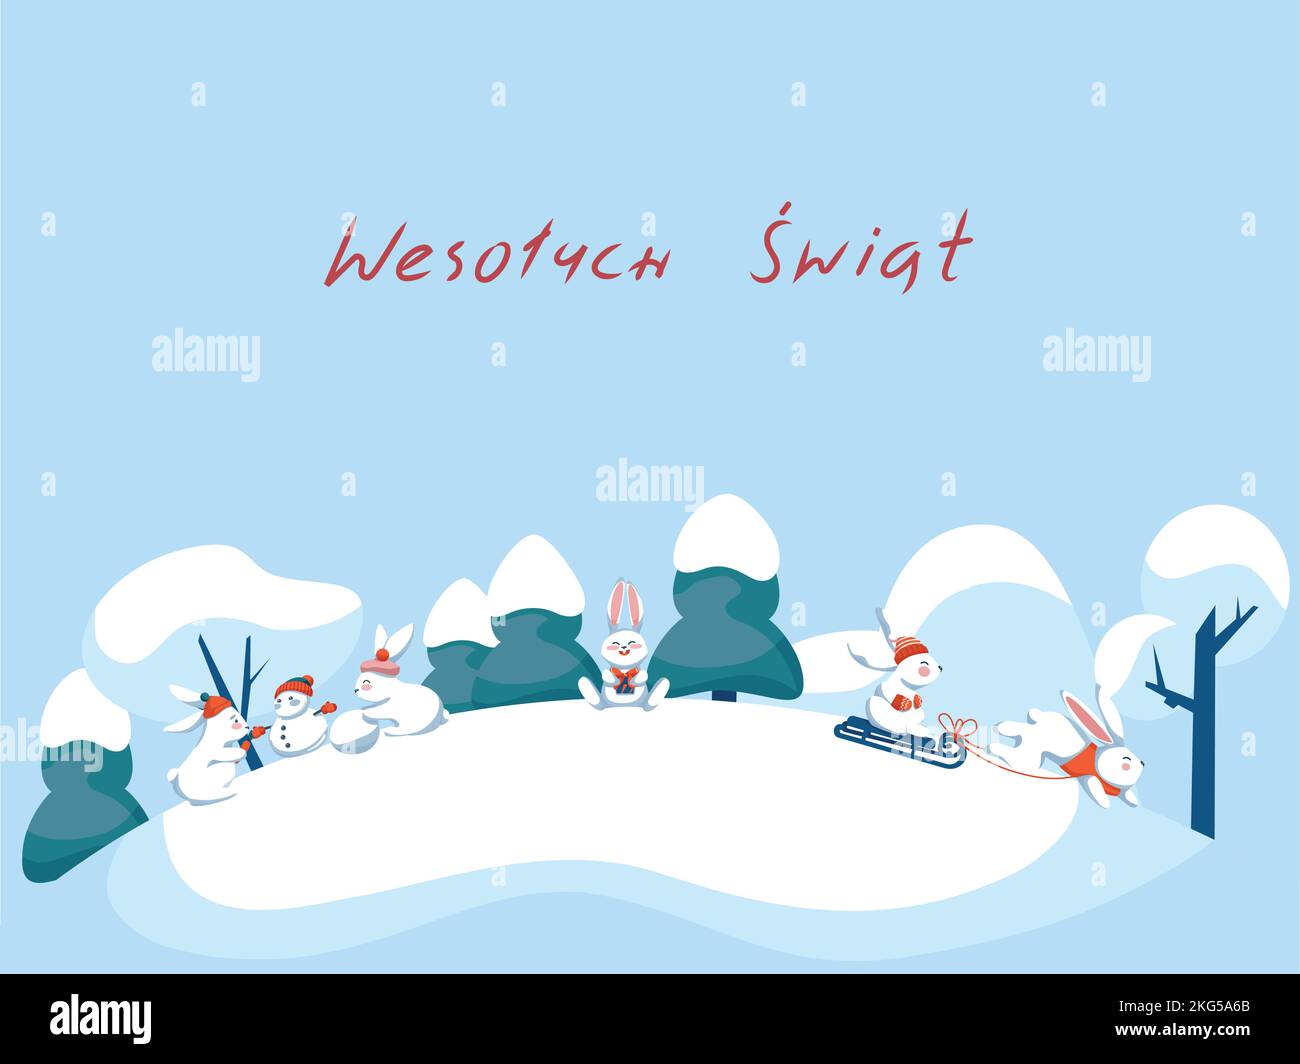 Tarjeta de felicitación navideña de invierno con diseño de wesolych Swiat en polaco Ilustración del Vector